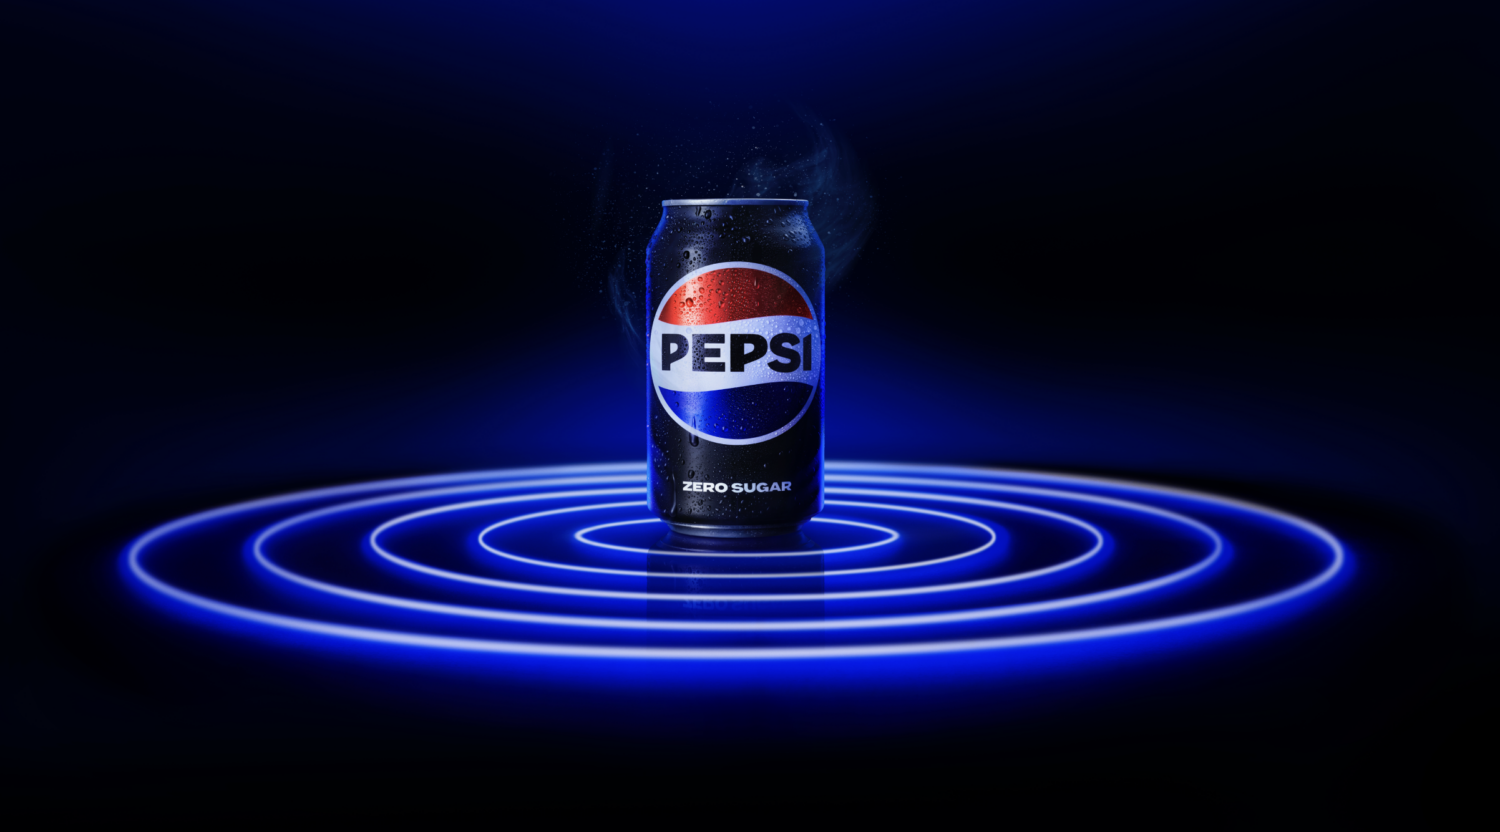 Pepsi on neon rings